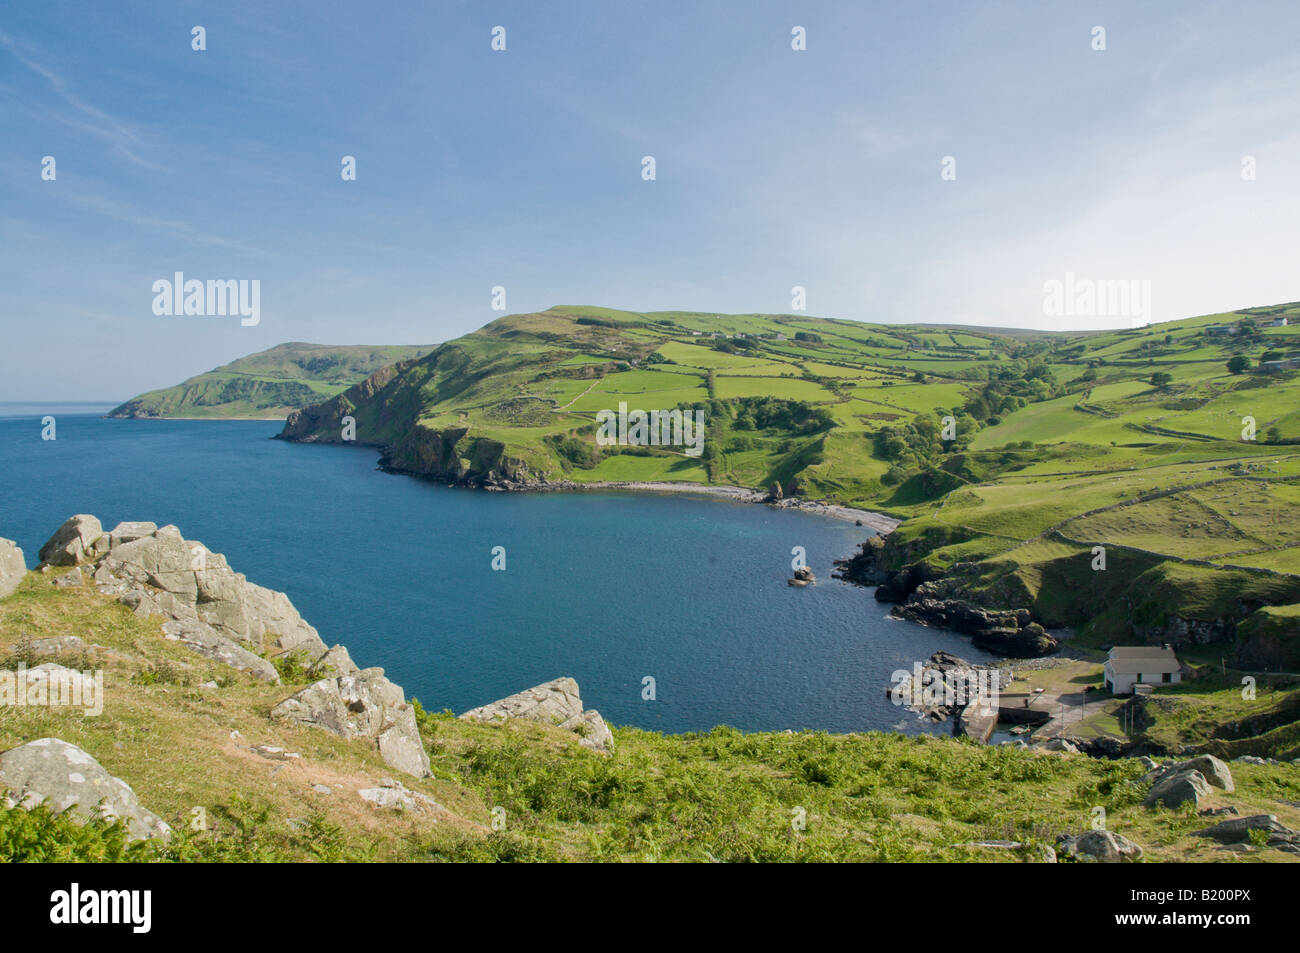 Causeway Coastal Route, Nordirland Torr Head, Co. Antrim, wie in der HBO Serie Game of Thrones enthalten Stockfoto